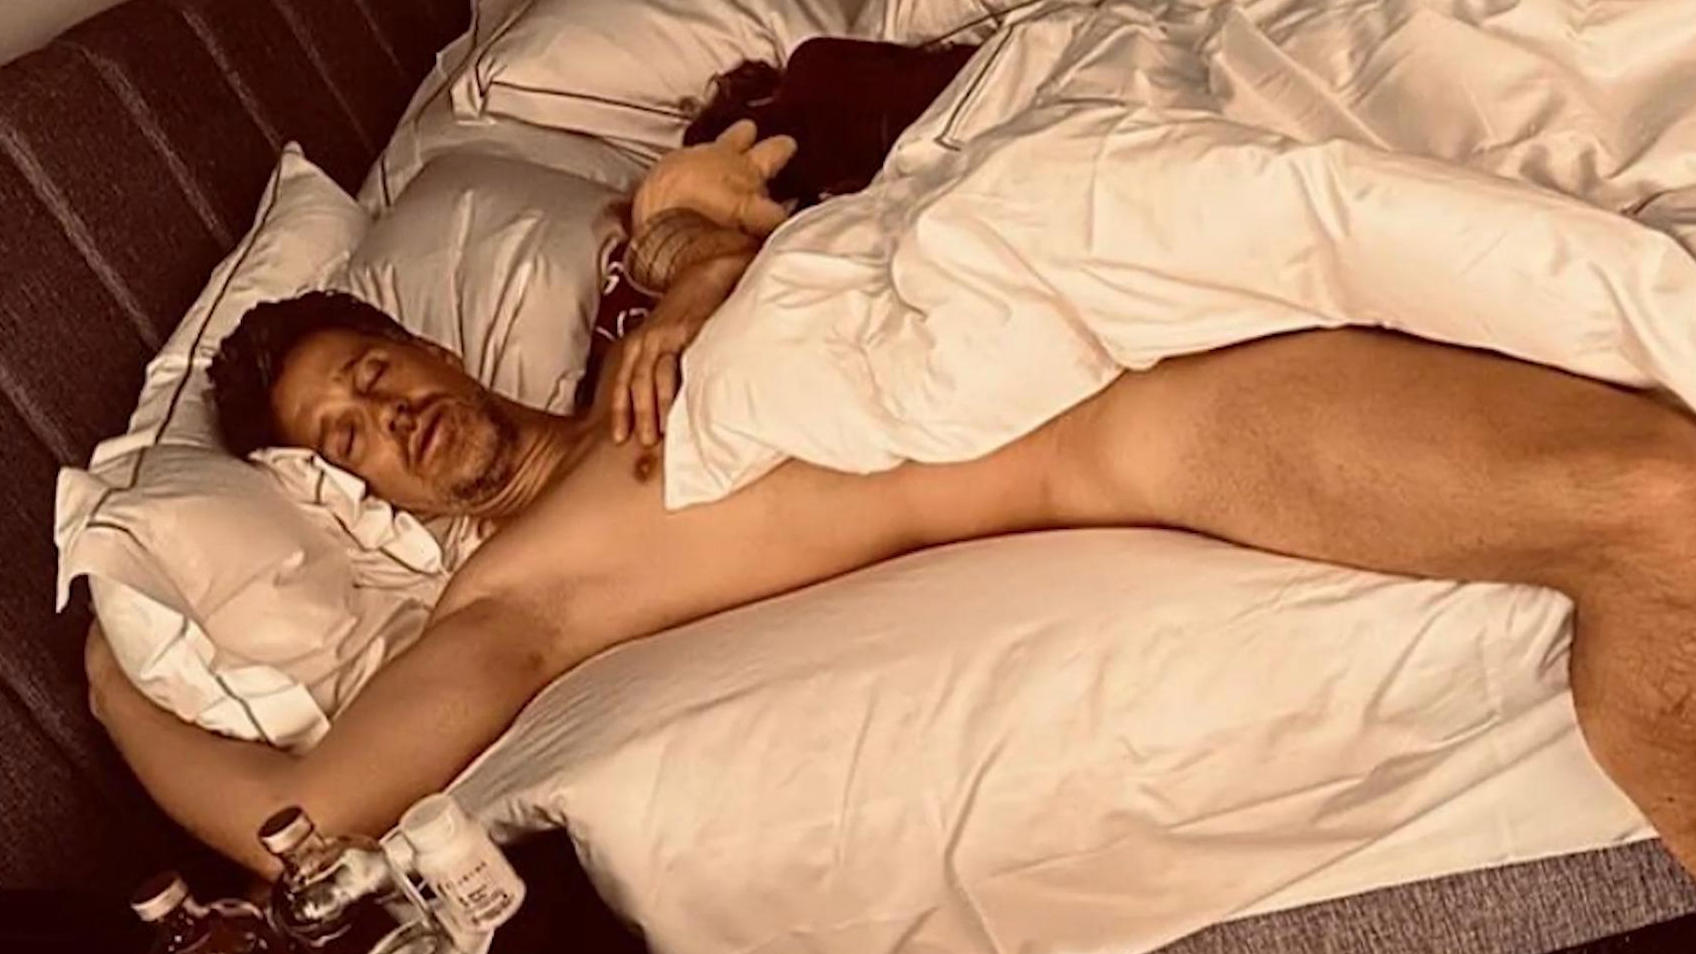 Aquí está Wayne Carpendale durmiendo plácidamente en la cama, ¡desnudo!  Bueno, ¿a quién tenemos aquí?